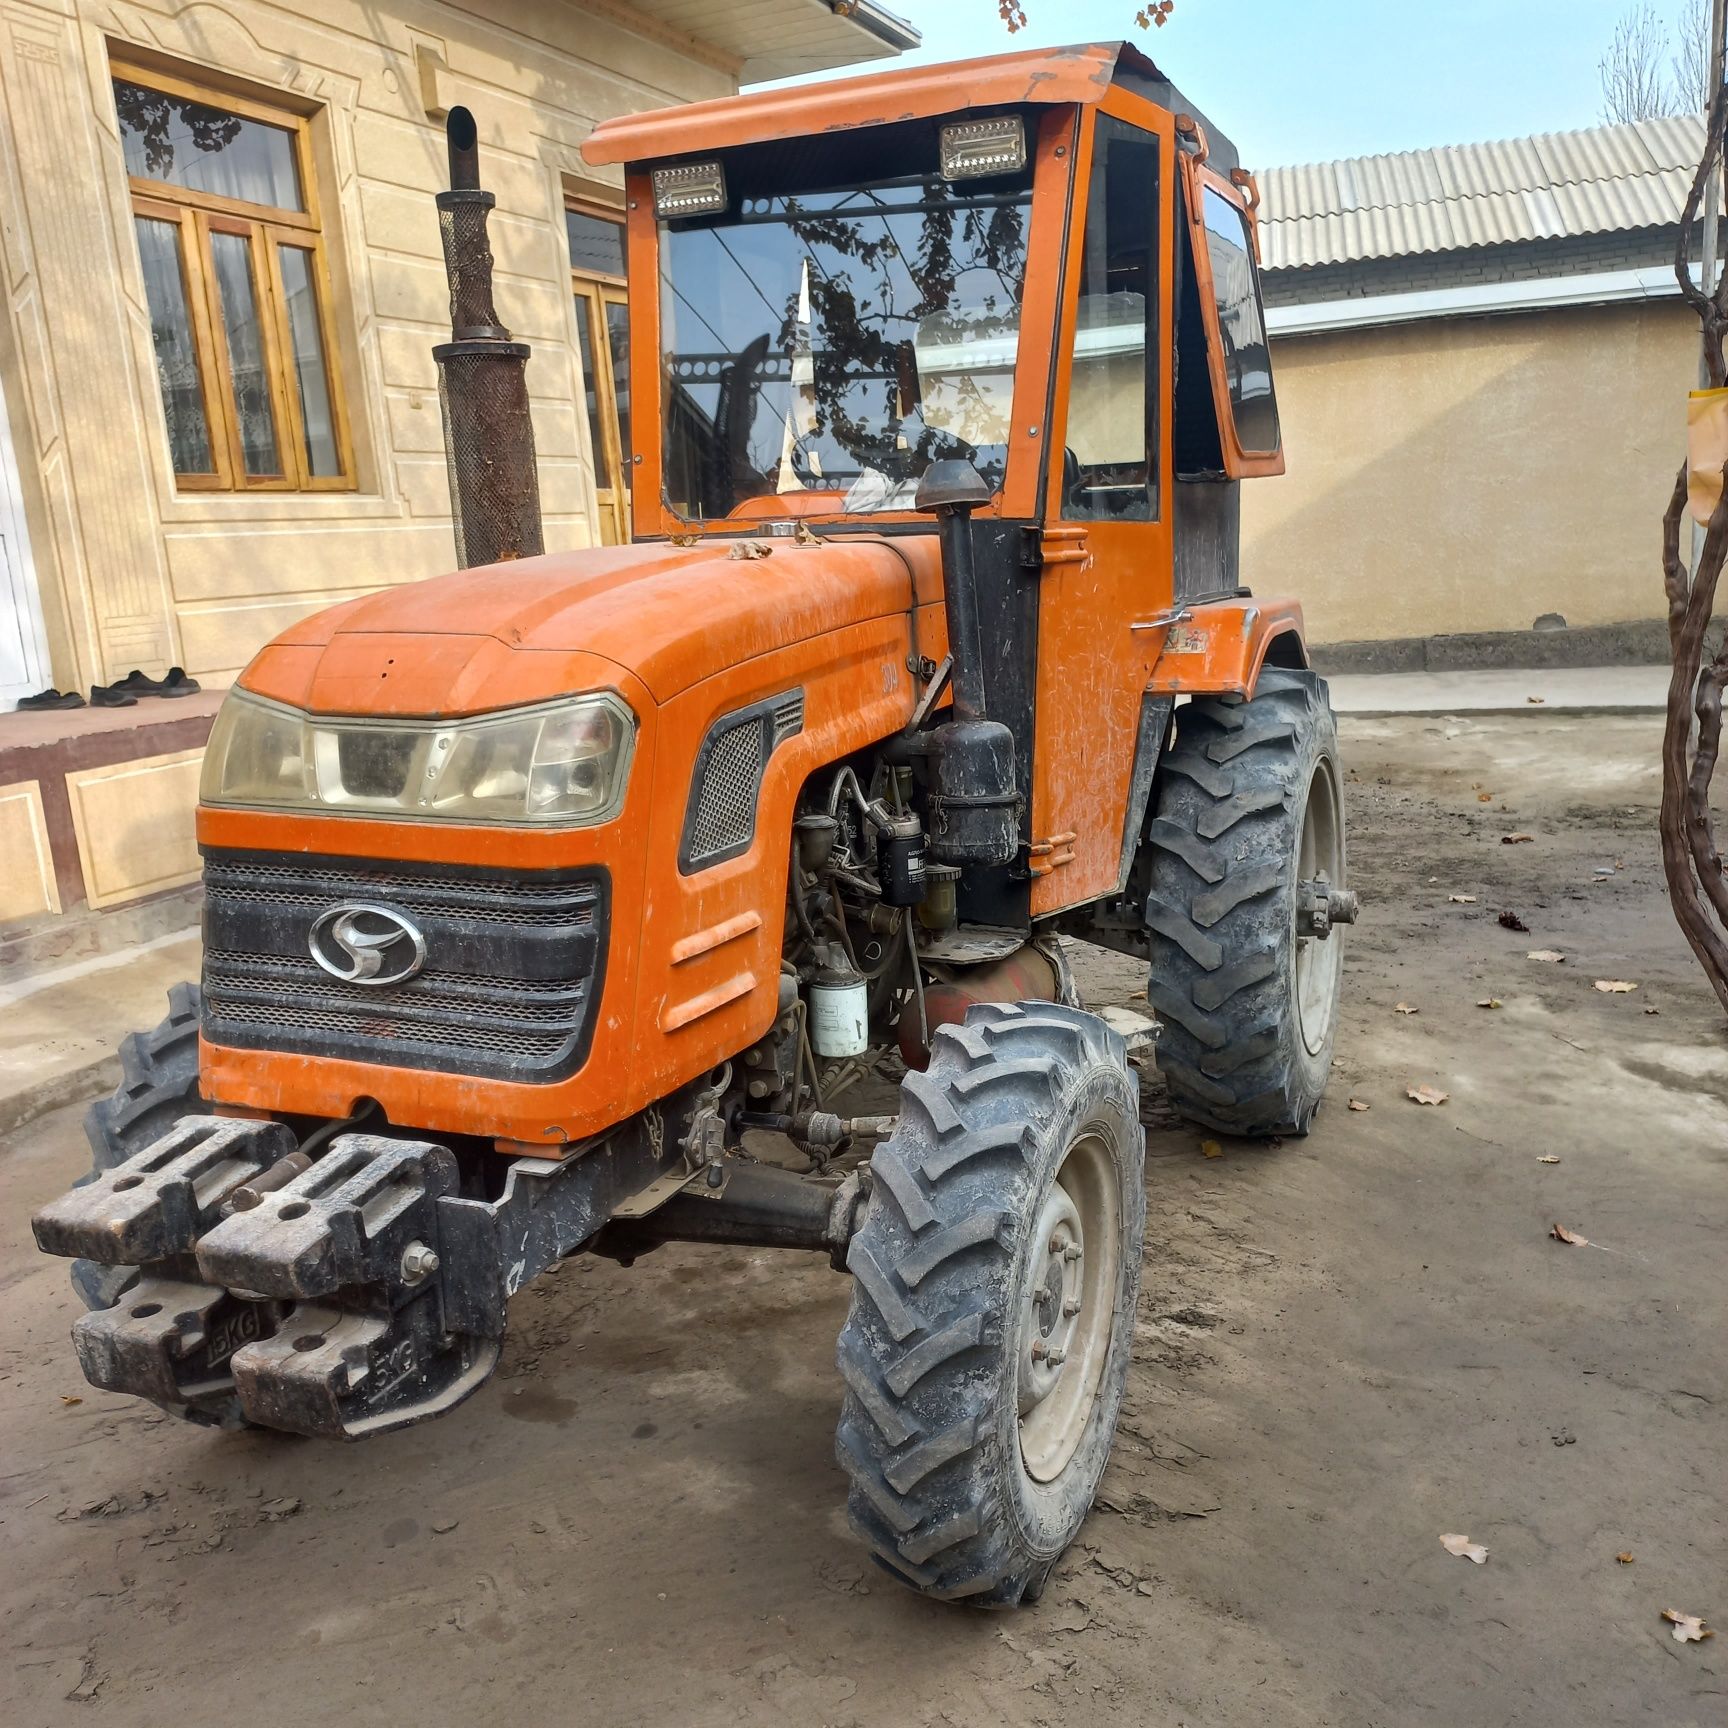 Chimgan 304 traktor